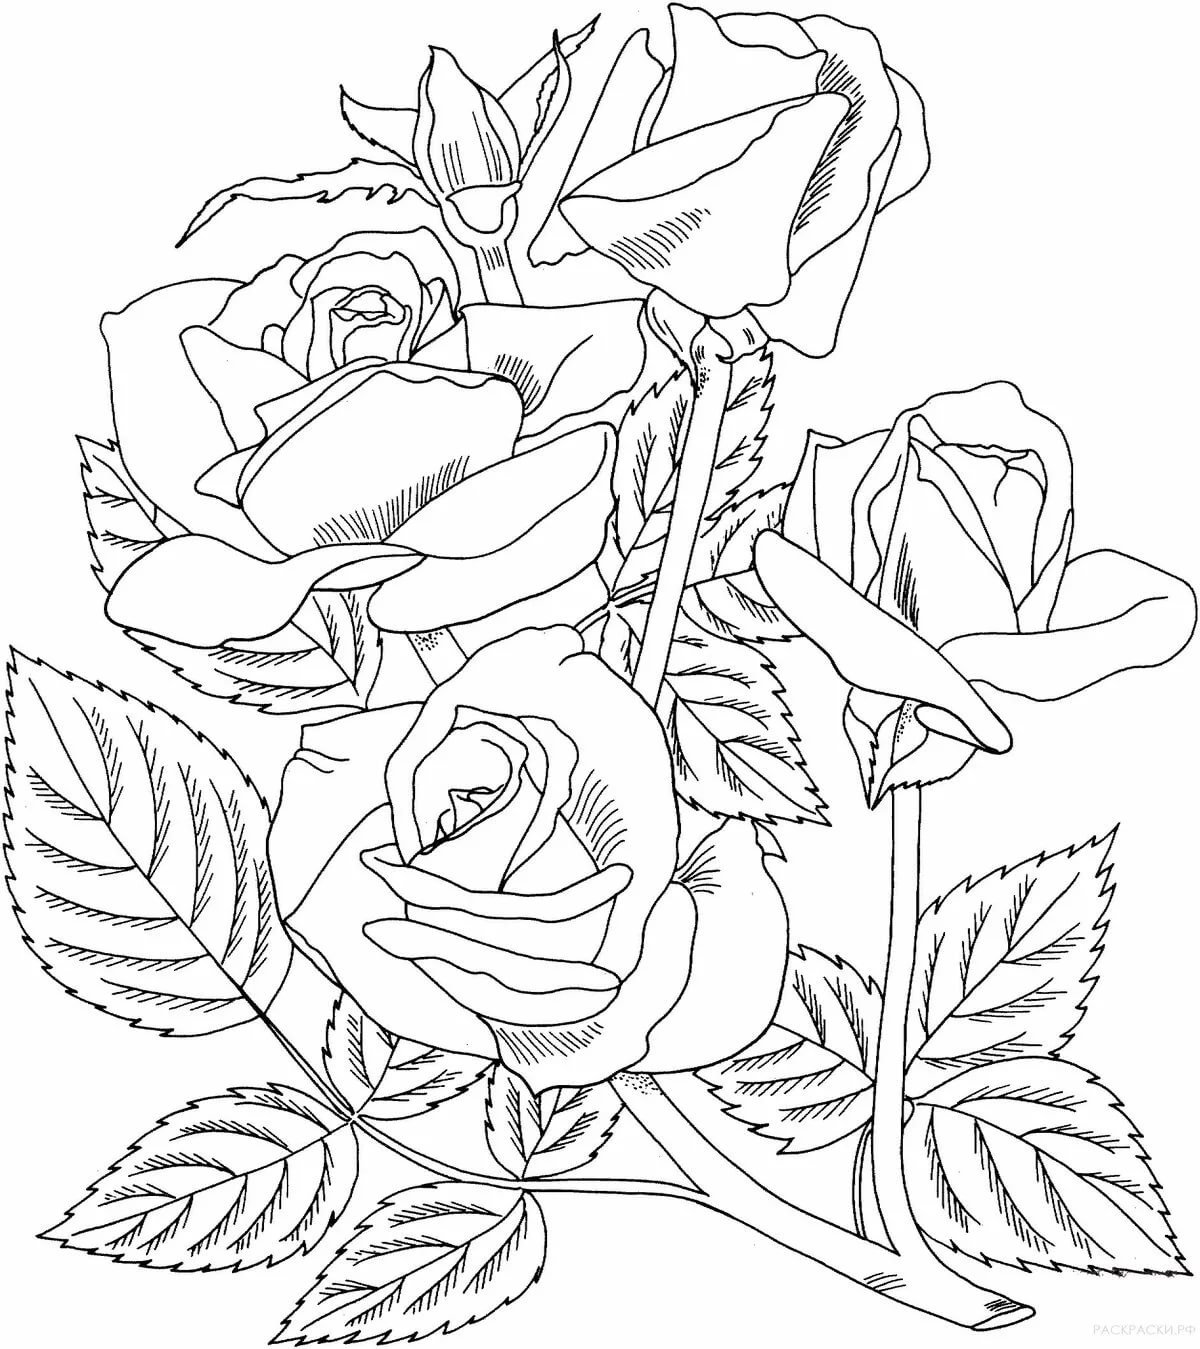 Раскраска букет роз